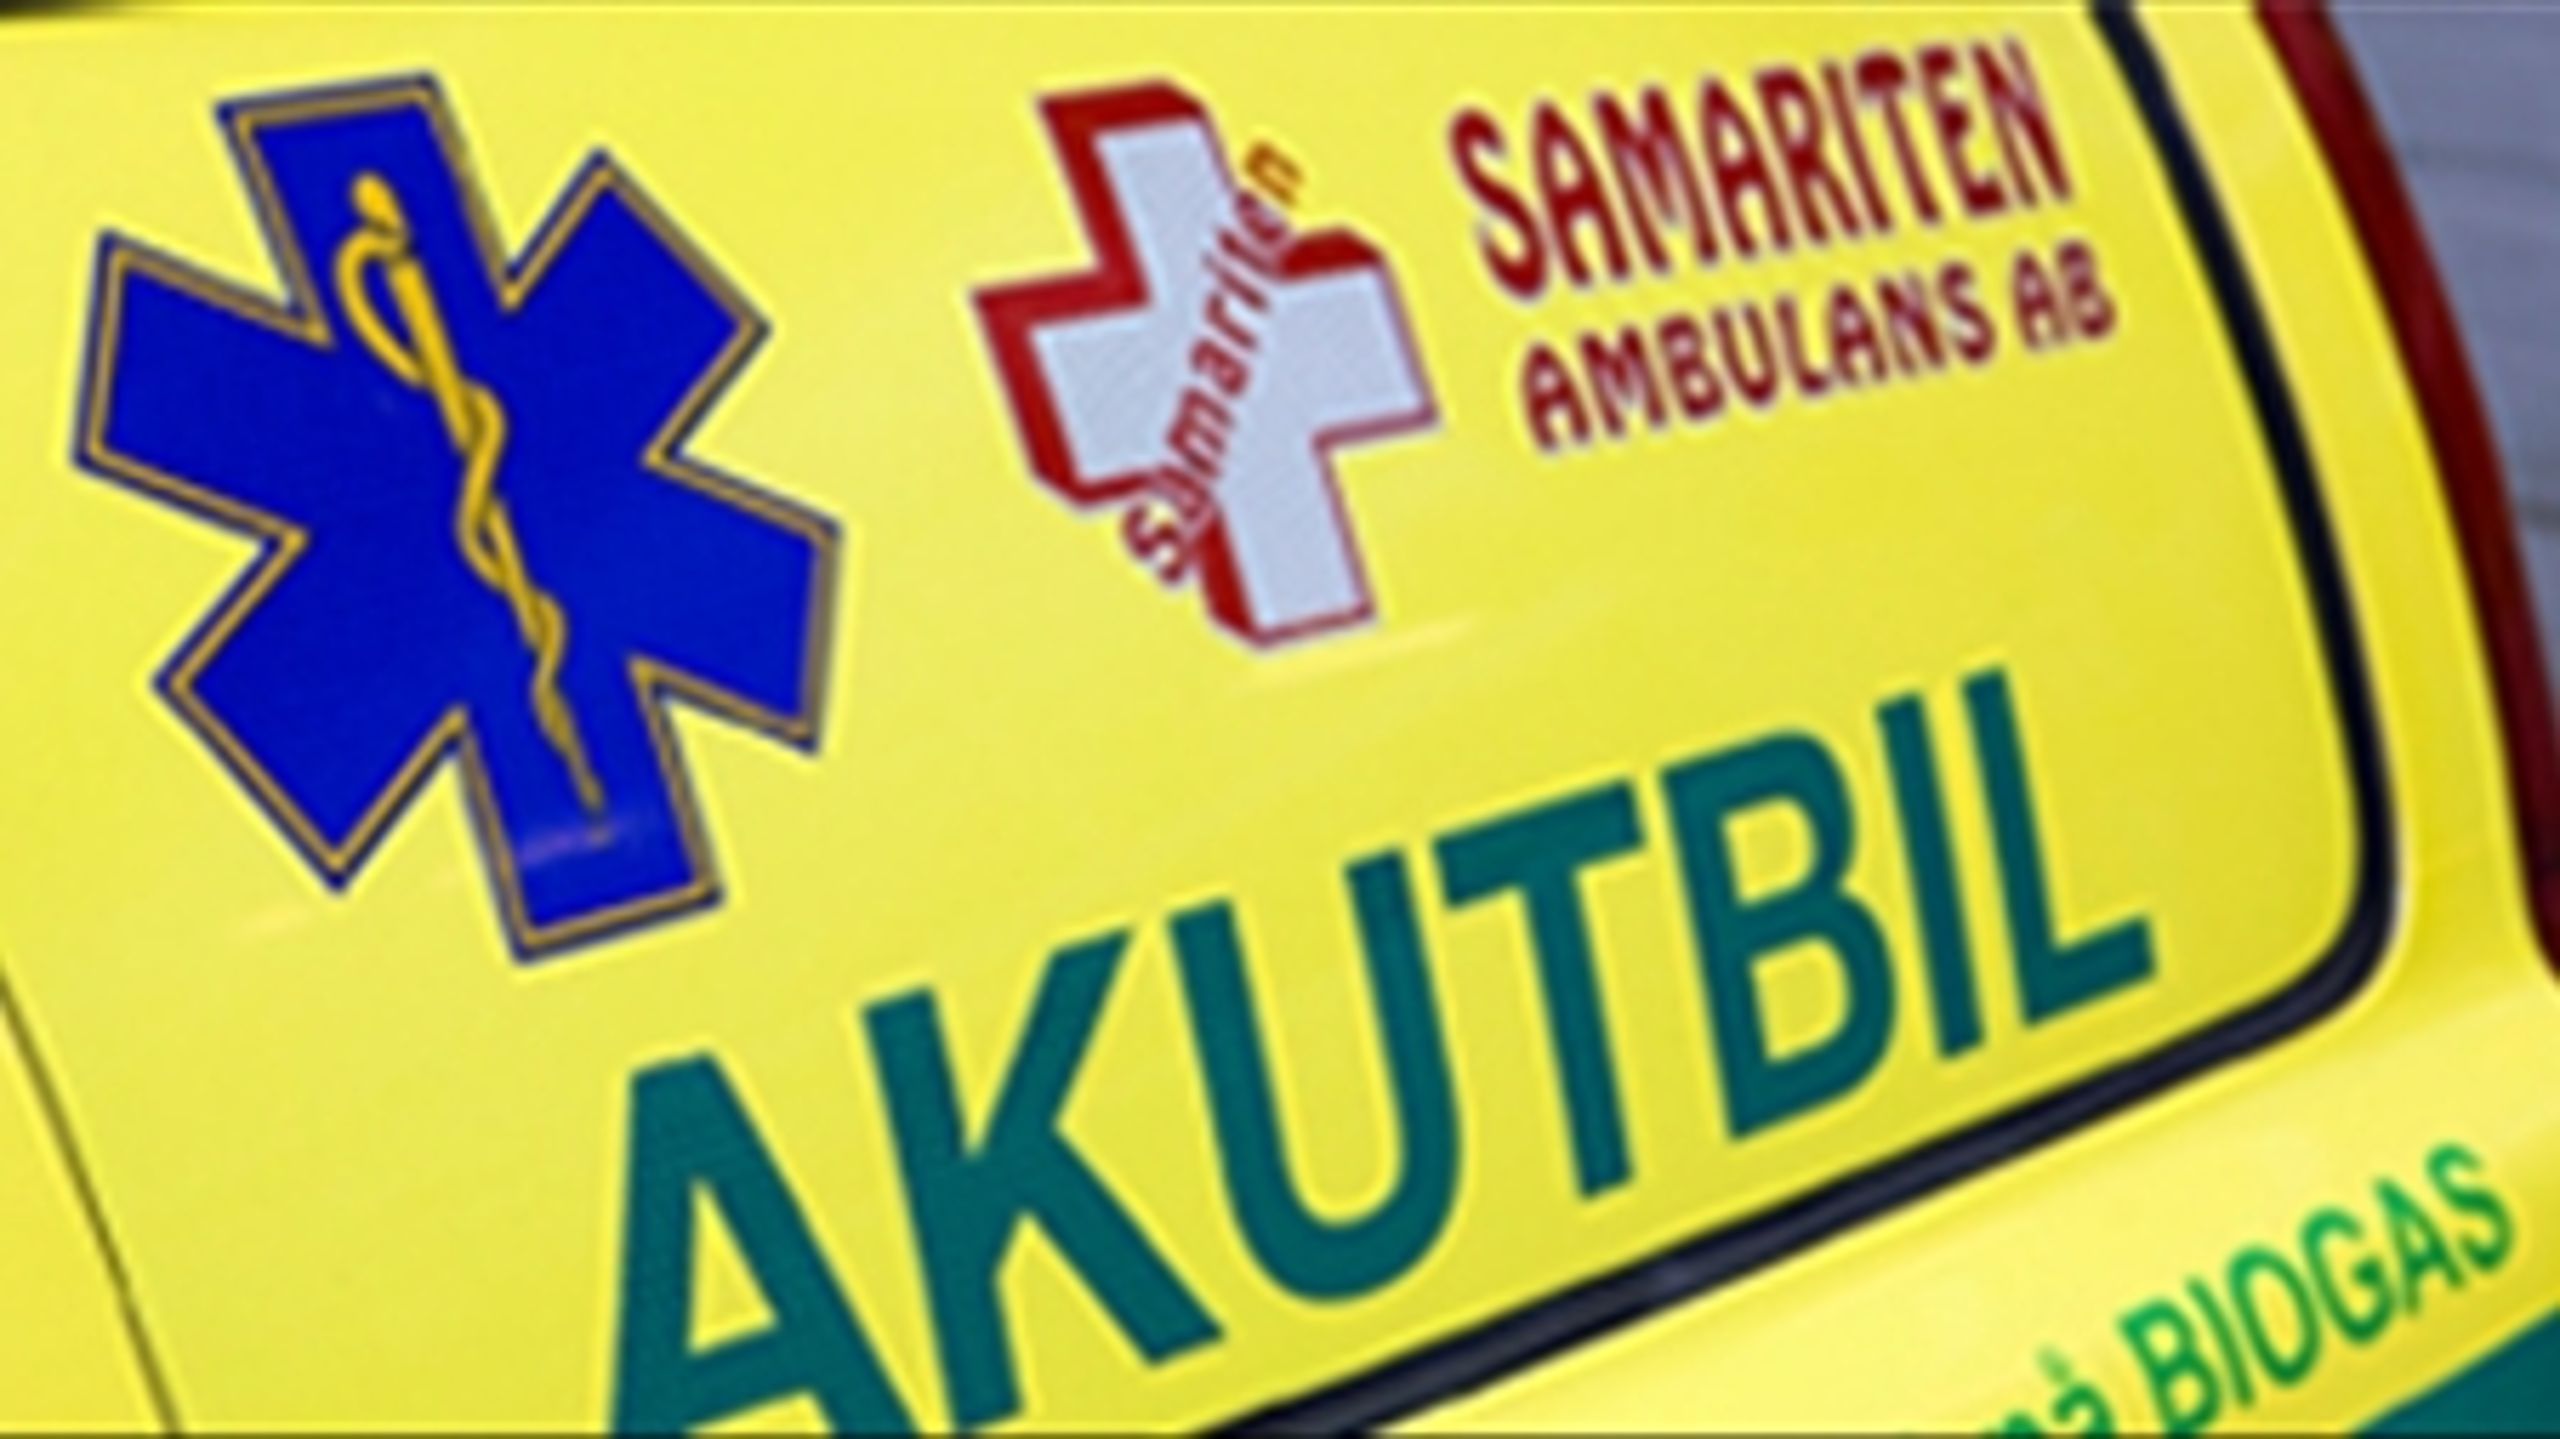 Det svenske ambulancefirma Samariten kaster endnu engang h&#229;ndkl&#230;det i ringen. Firmaet, der tidligere har opgivet at k&#248;re for Region Midtjylland, opgiver nu ogs&#229; at k&#248;re ambulance i Region Sj&#230;lland.